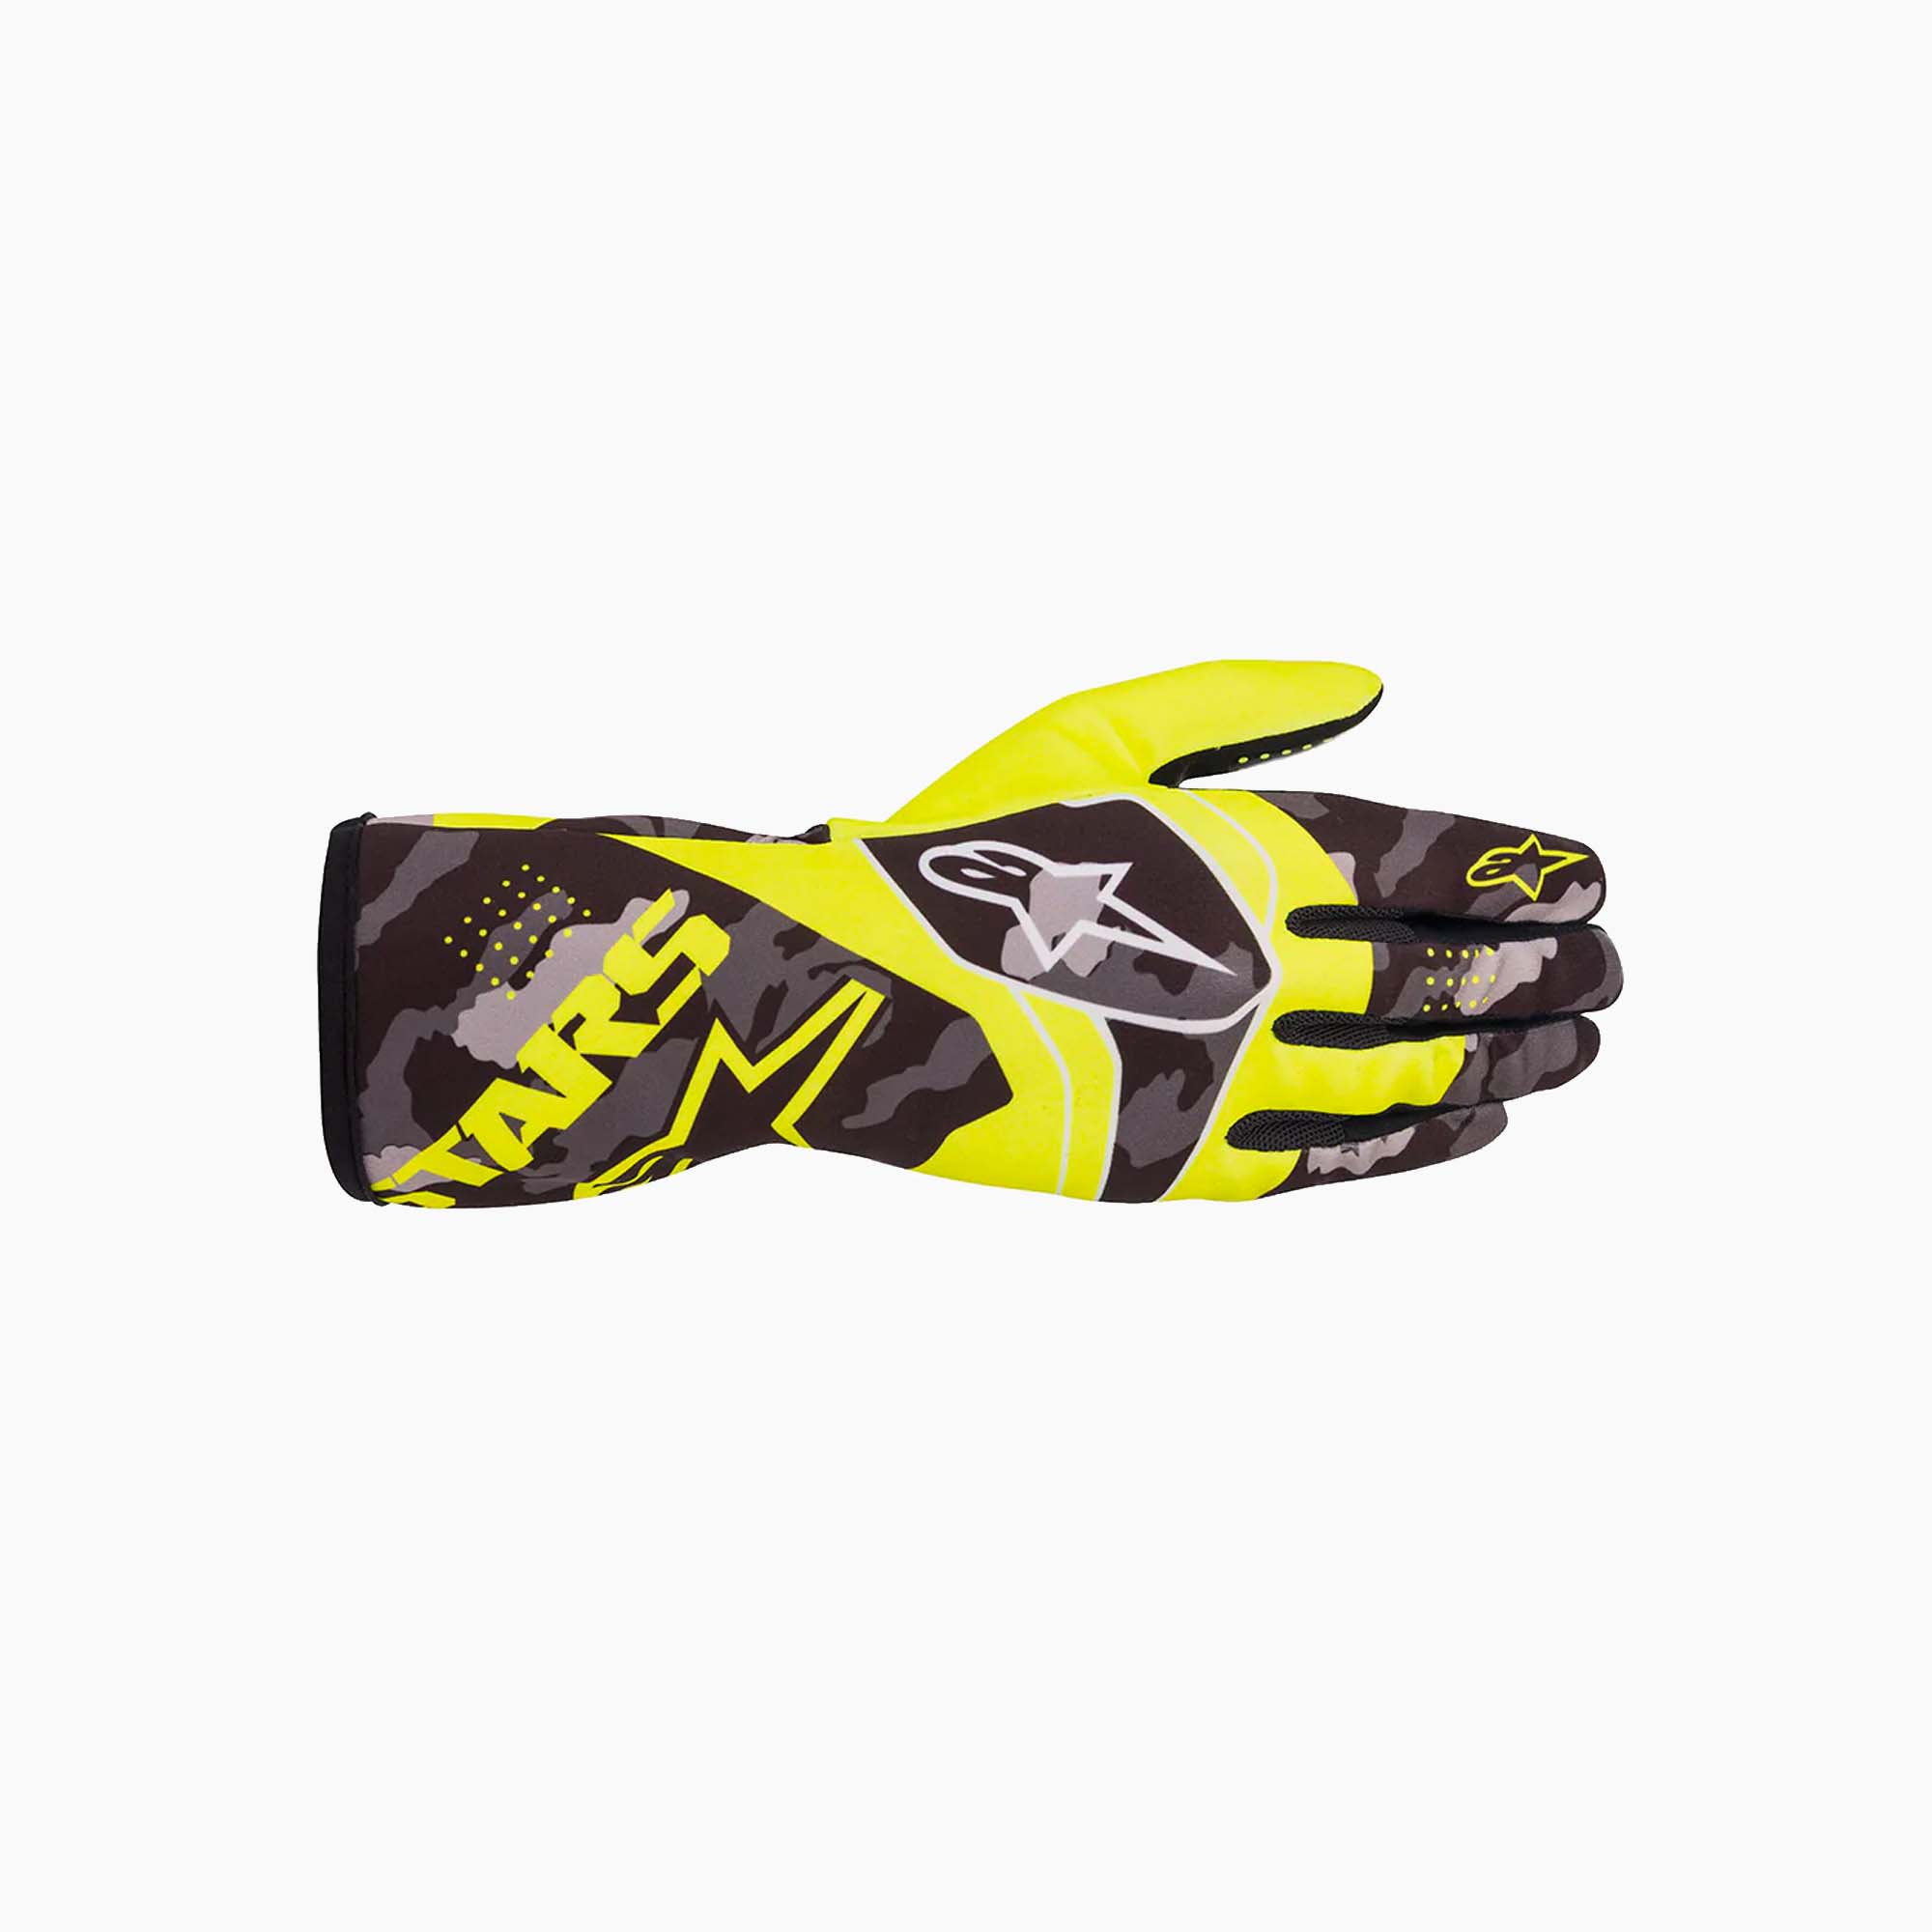 Alpinestars | Tech-1 K Race S V2 Yellow Camo Youth Karting Gloves-Karting Gloves-Alpinestars-gpx-store